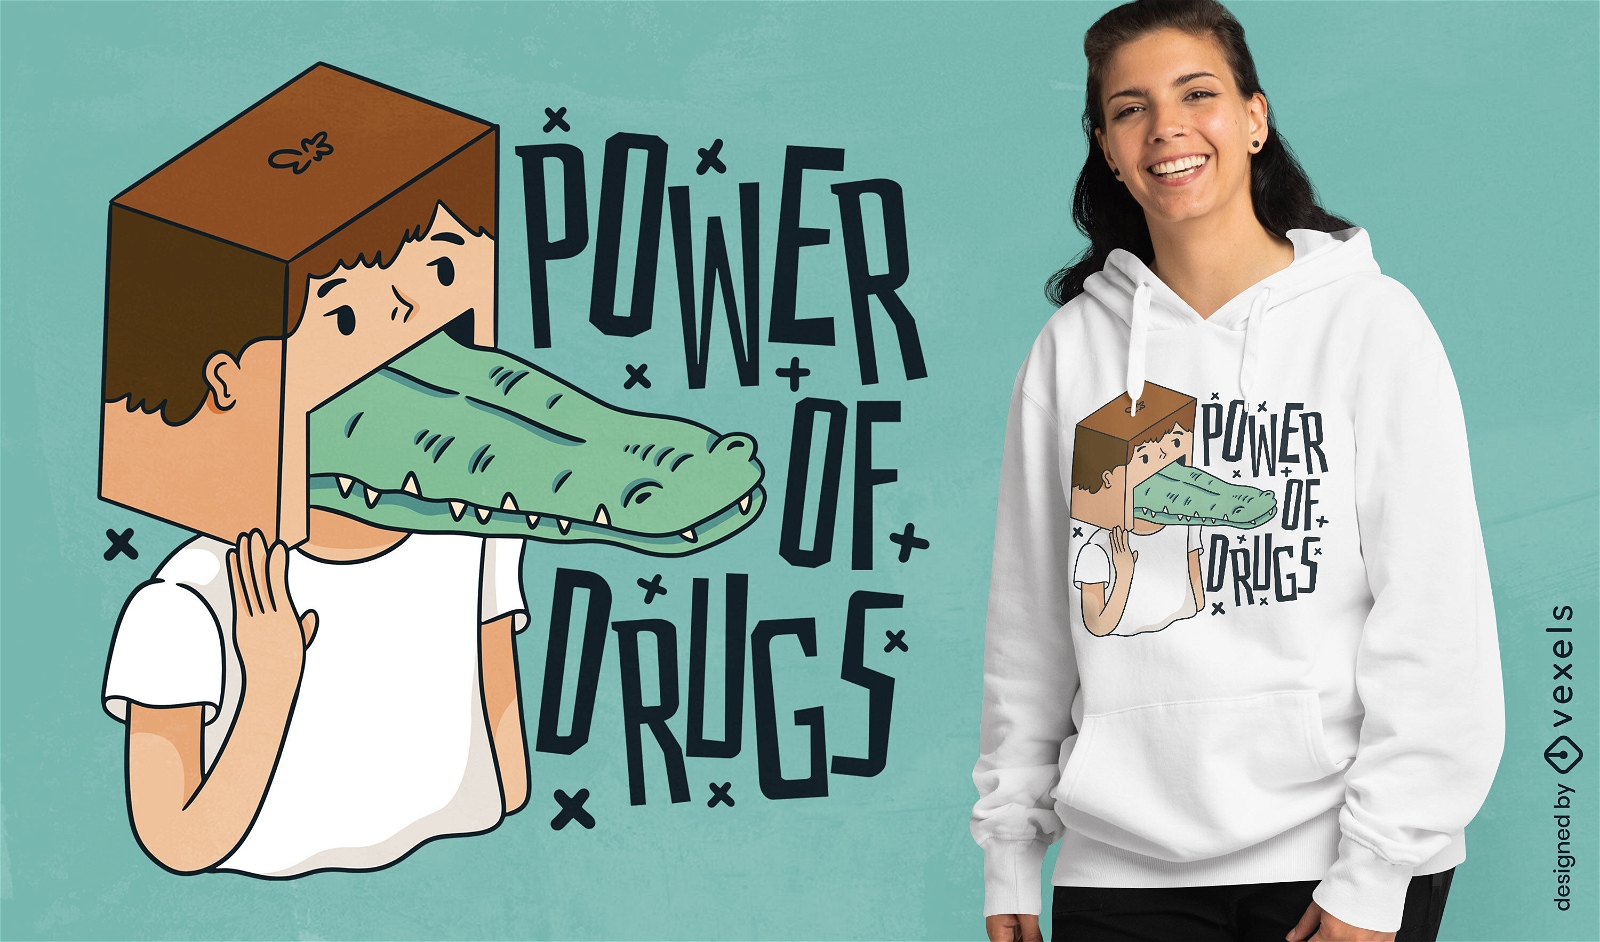 Power of drugs t-shirt design